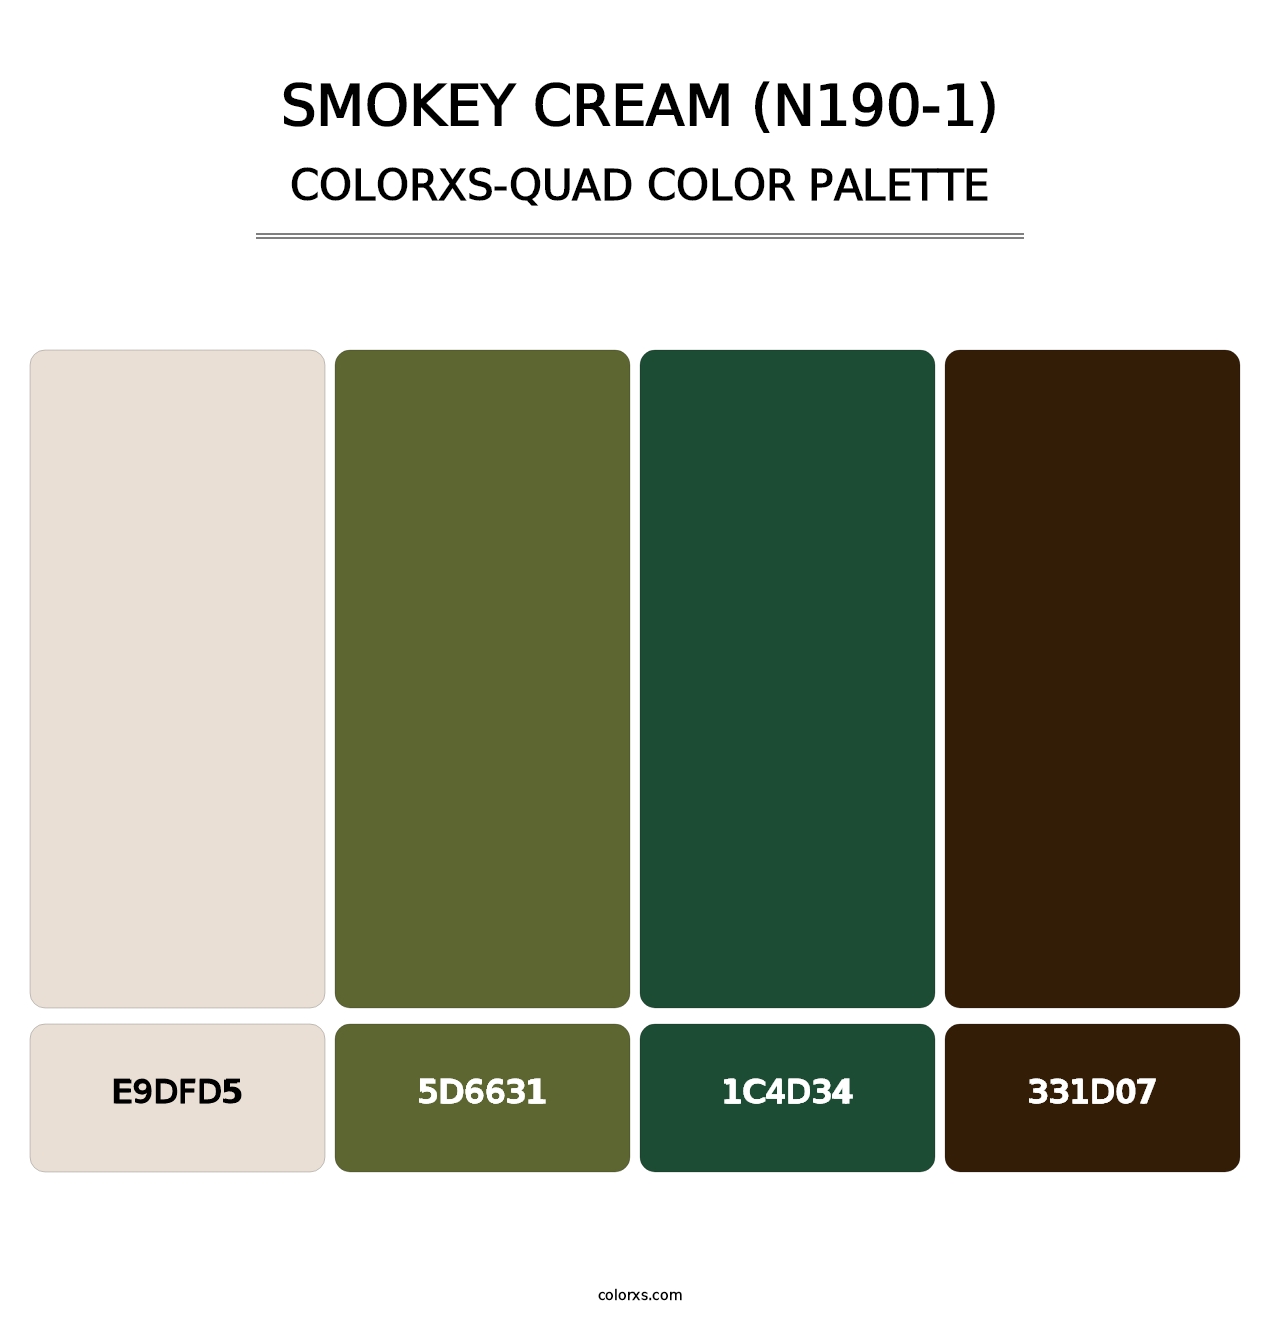 Smokey Cream (N190-1) - Colorxs Quad Palette